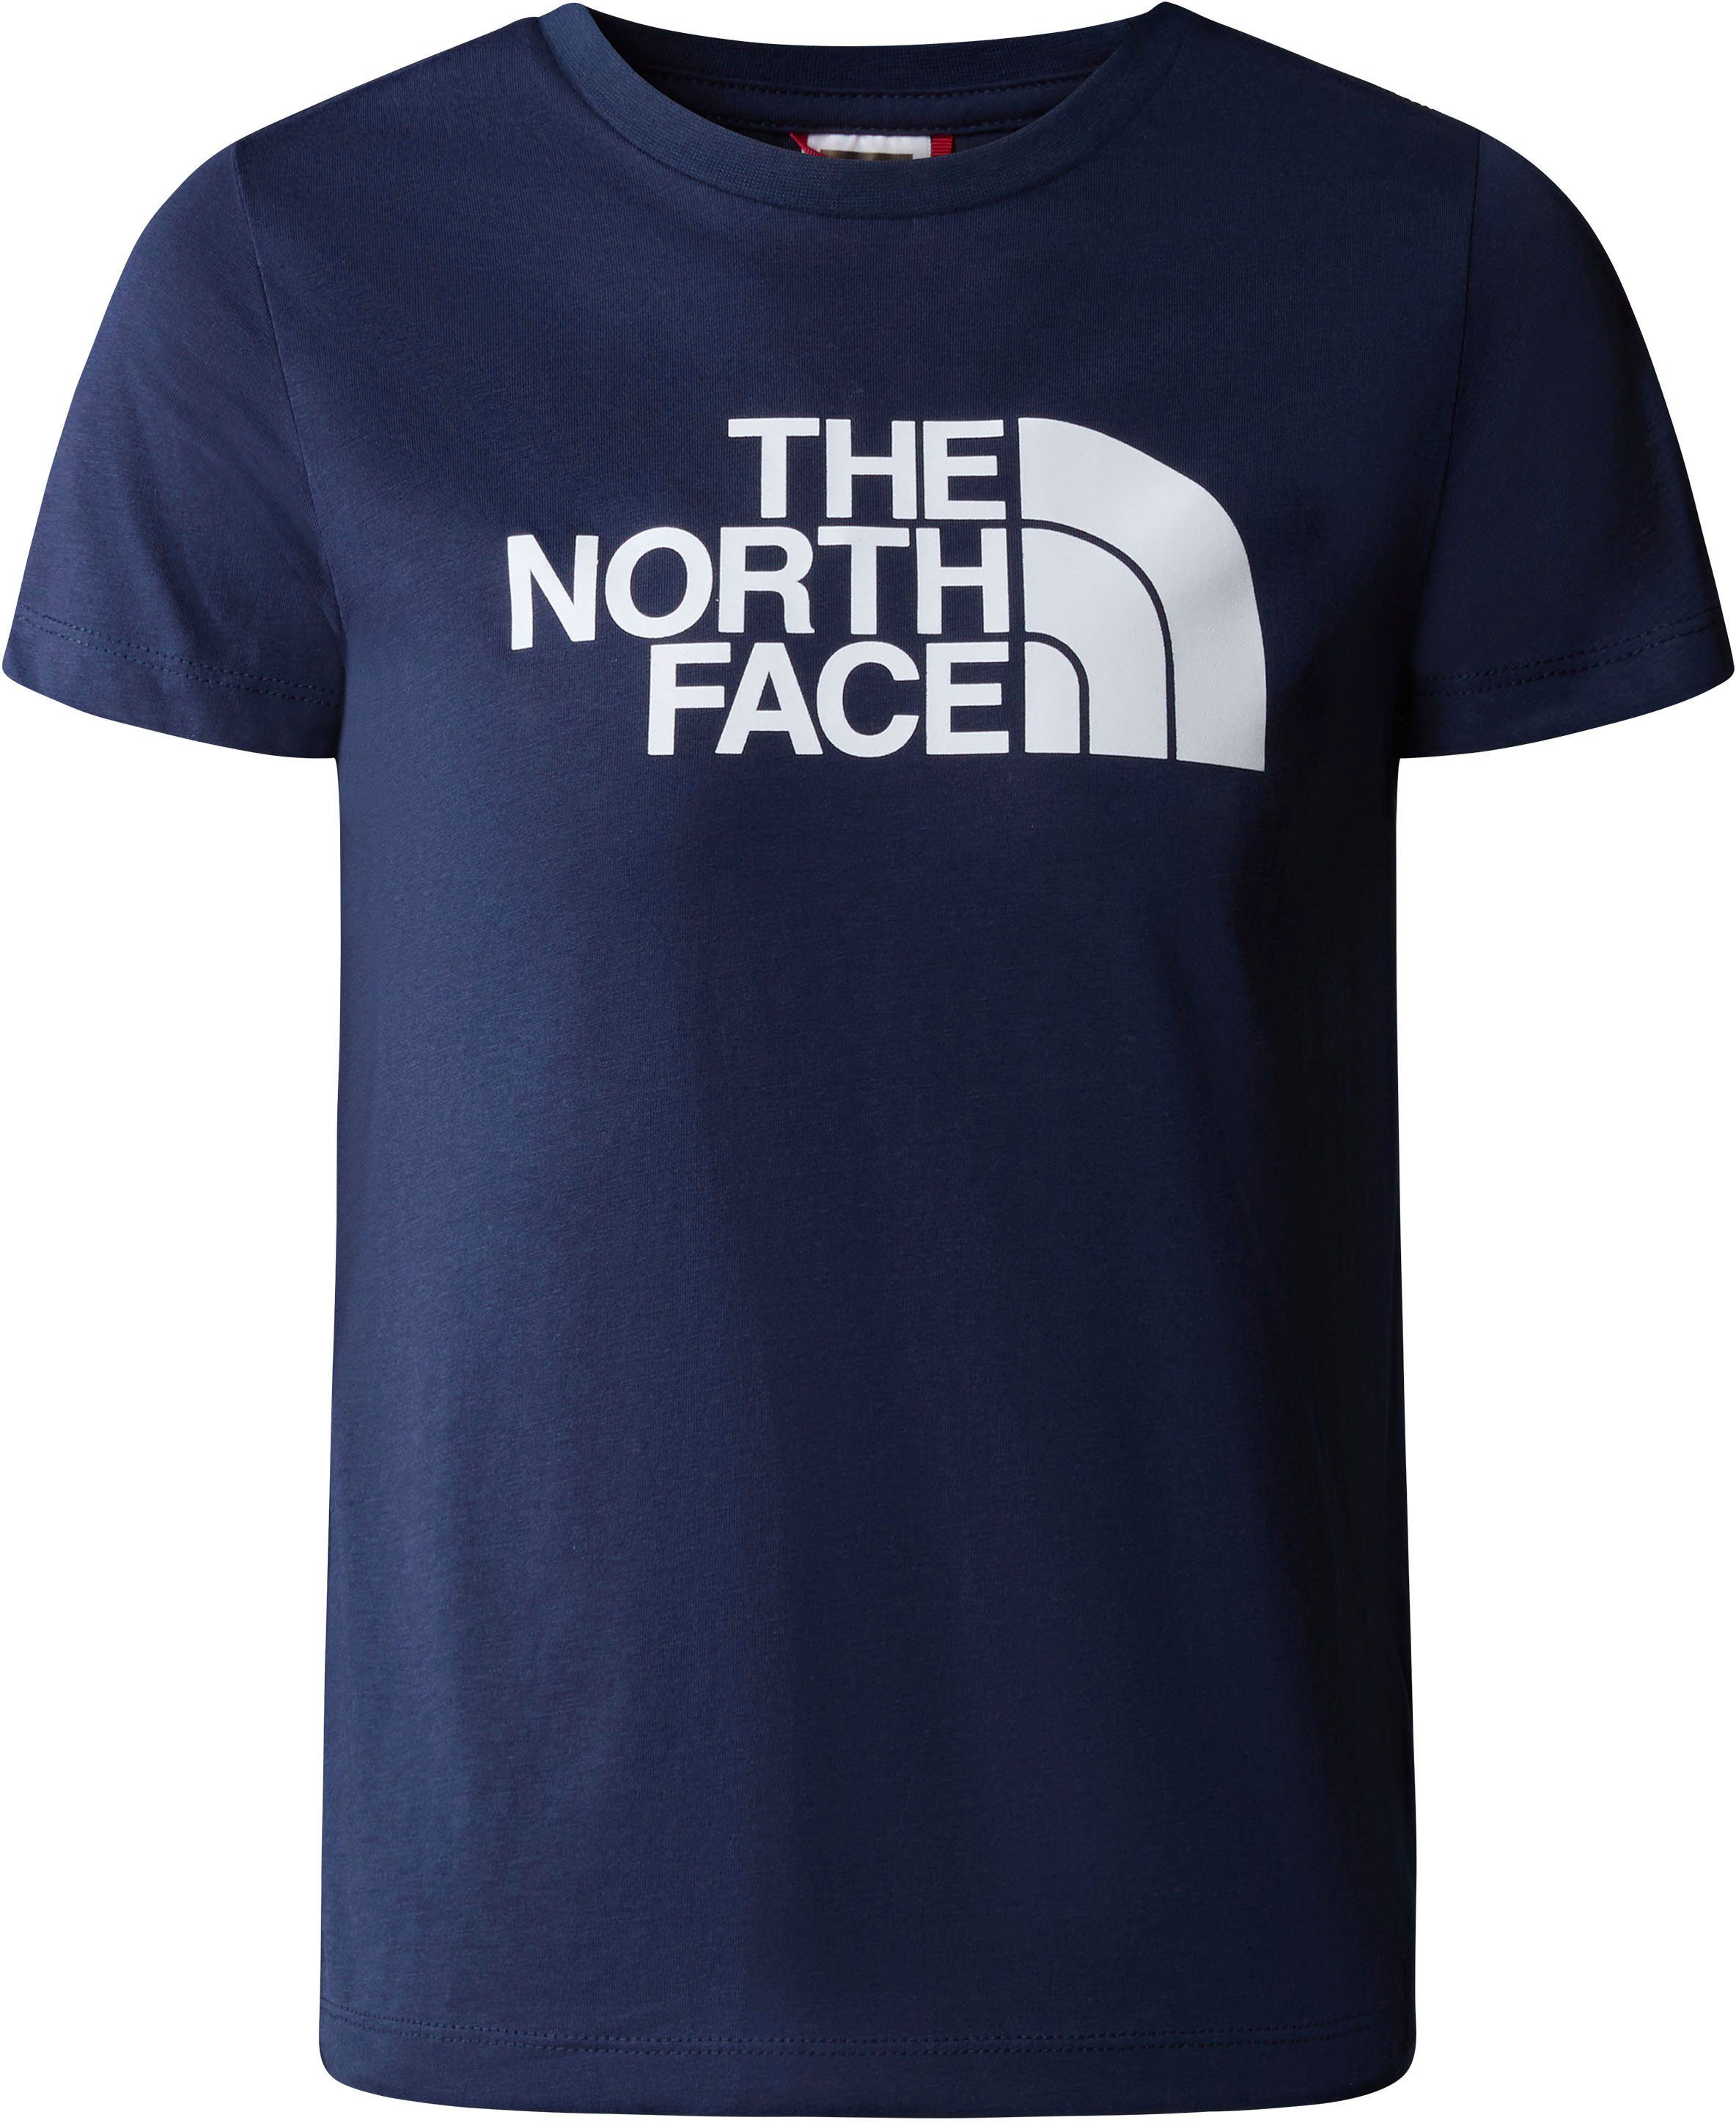 TEE summit für The EASY - Kinder Face navy T-Shirt North